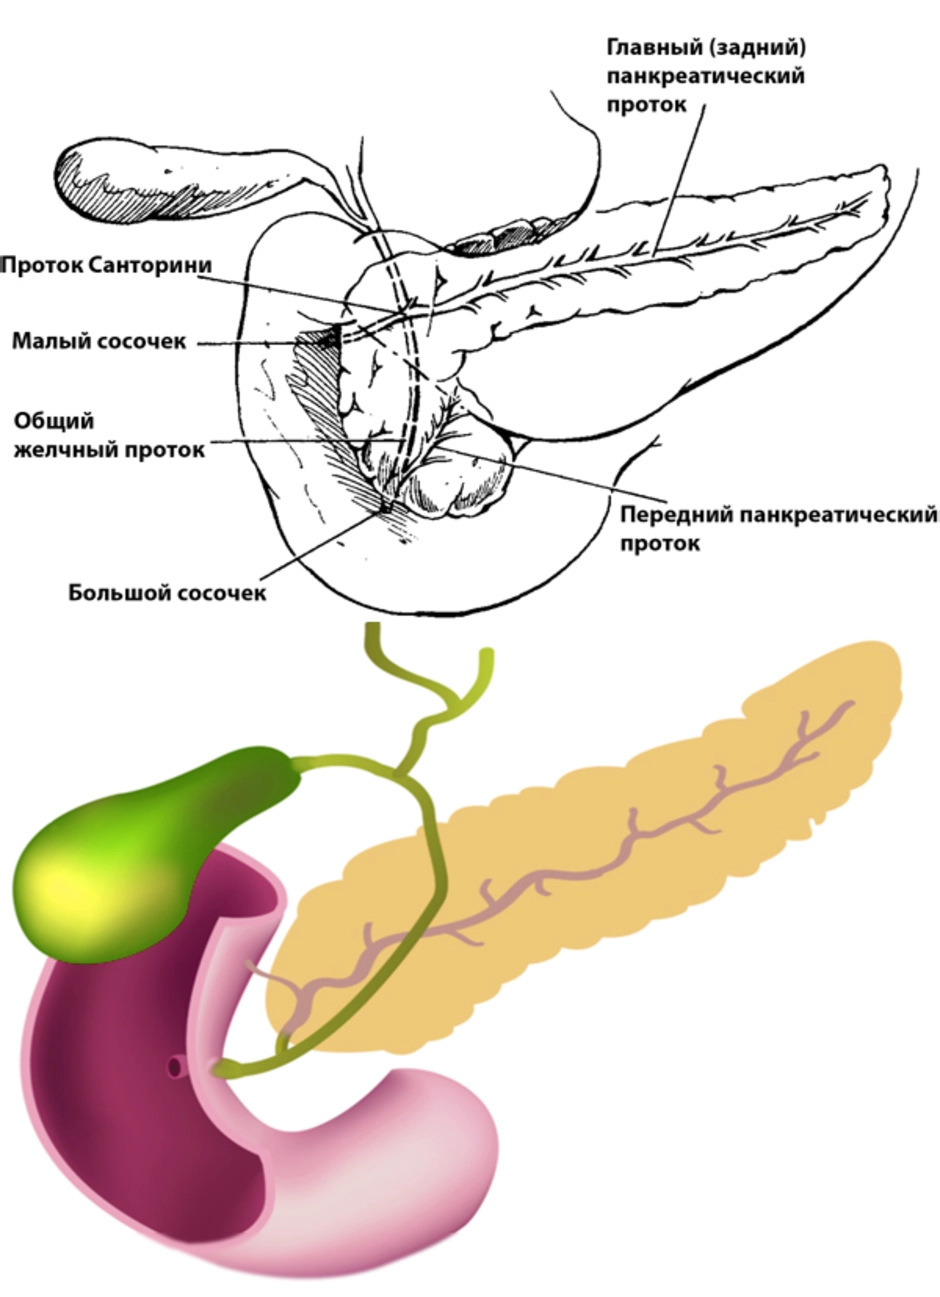 Поджелудка где. Анатомия поджелудочная железа расположение. Поджелудочная железа схема. Внутренние органы человека поджелудочная железа схема расположения. Строение поджелудочной железы анатомия.